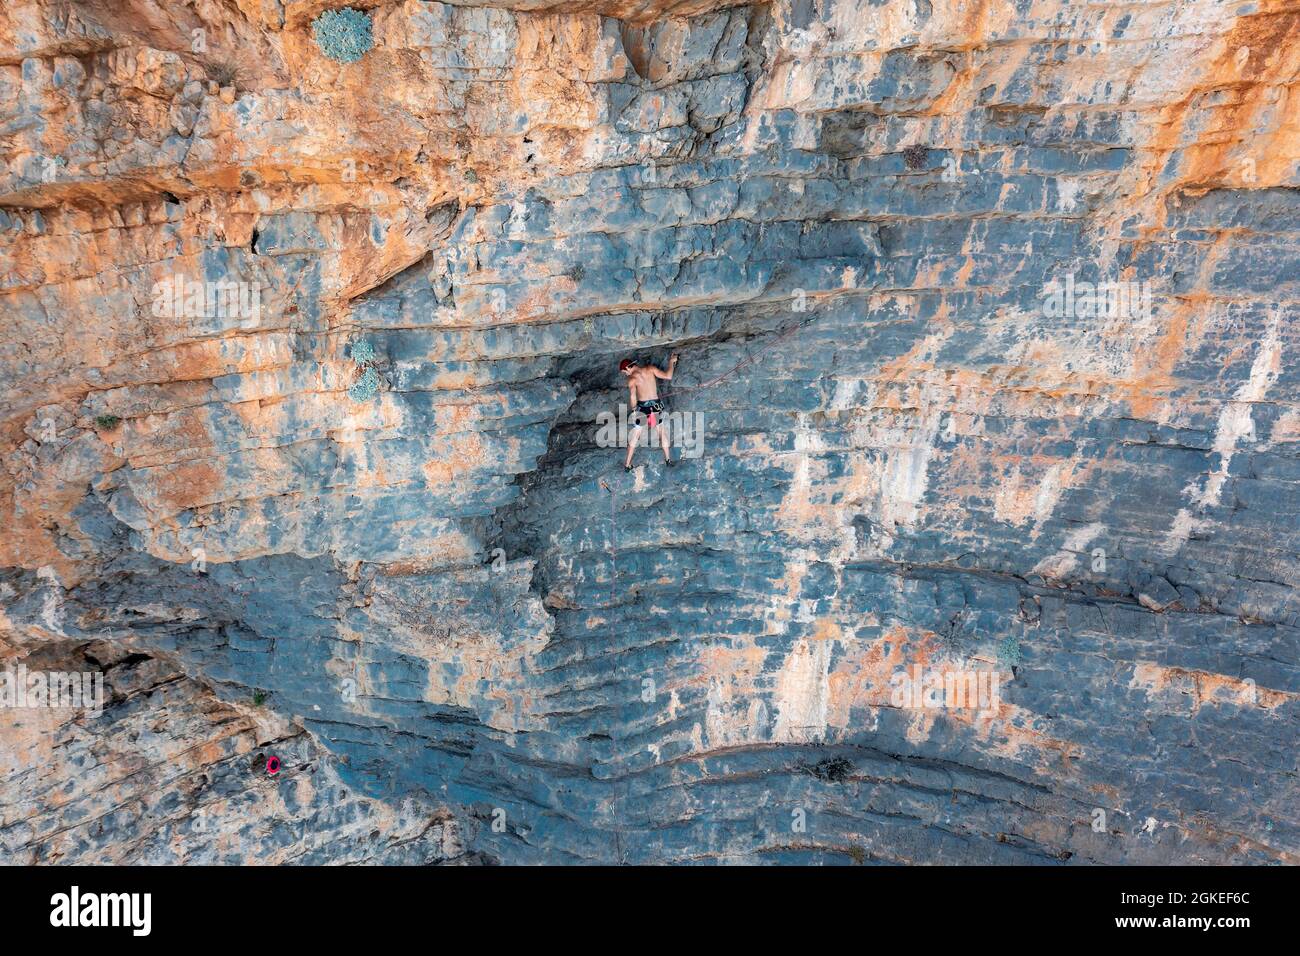 Scalata su una parete rocciosa, arrampicata sportiva, Telendos, vicino Kalymnos, Dodecaneso, Grecia Foto Stock